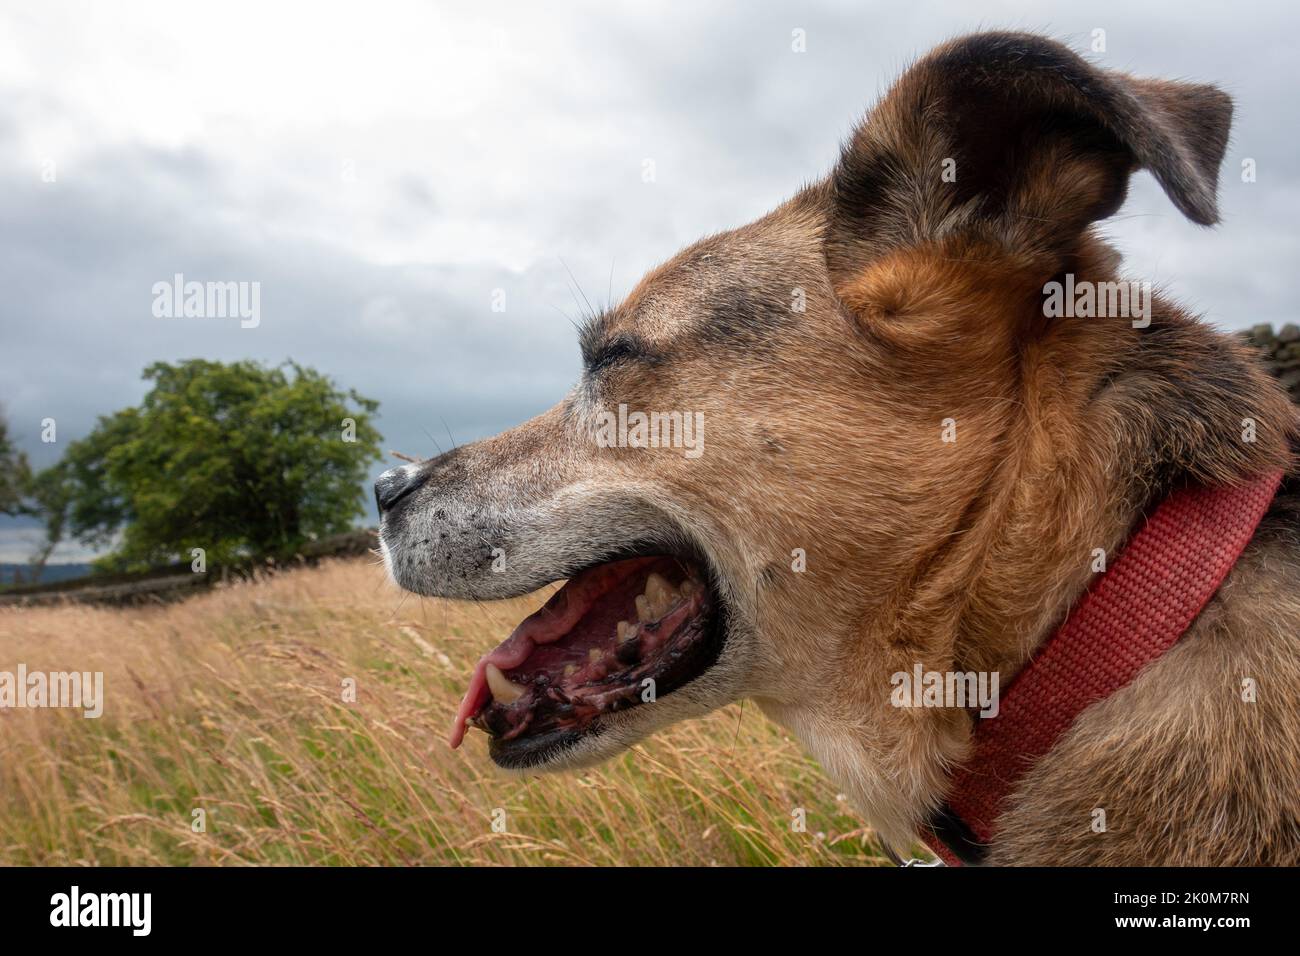 Alter Hund mit geschlossenen Augen und offenem Mund zeigt Gesundheit der Zähne auf dem Land genießen die Natur, Yorkshire, England, Großbritannien Stockfoto